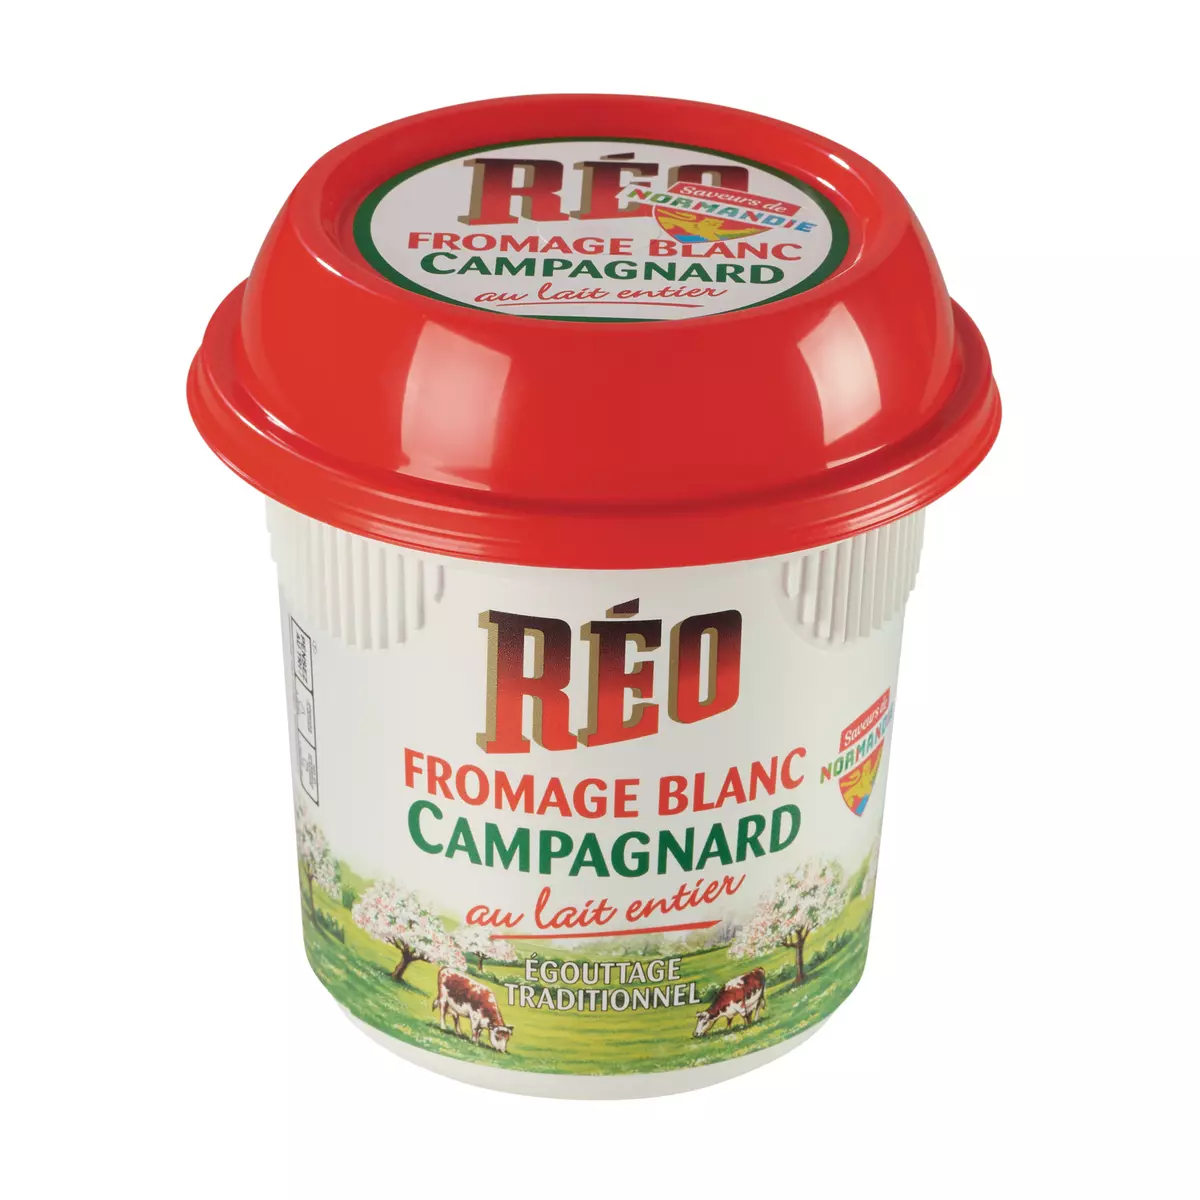 REO Fromage blanc Campagnard 8.1% MG 500g